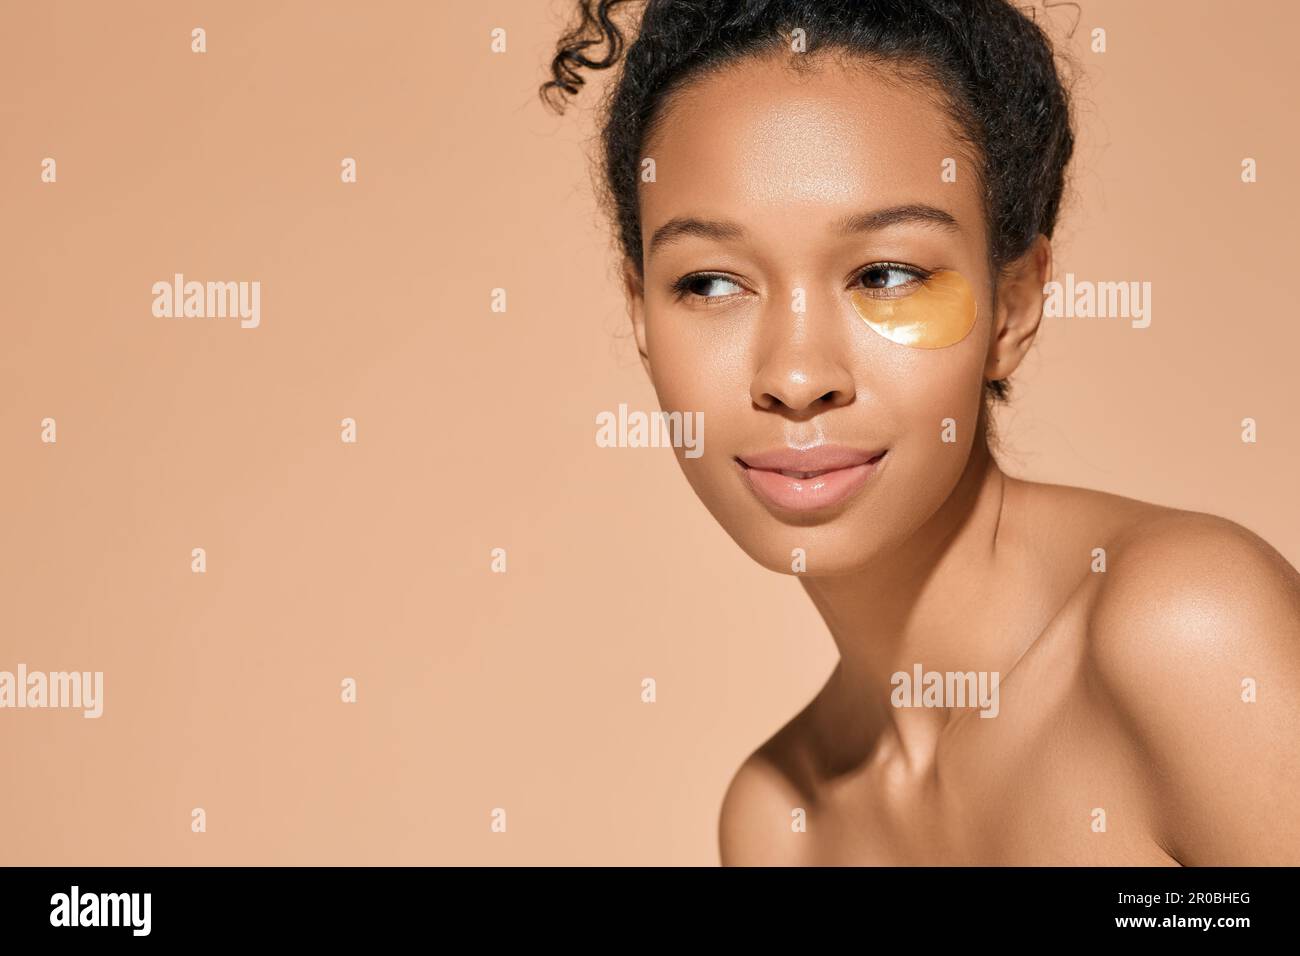 Donna afroamericana con macchie dorate di idrogel sotto i suoi occhi per alleviare la puffiness durante le procedure cosmetiche, isolato su sfondo beige. Pelle Foto Stock